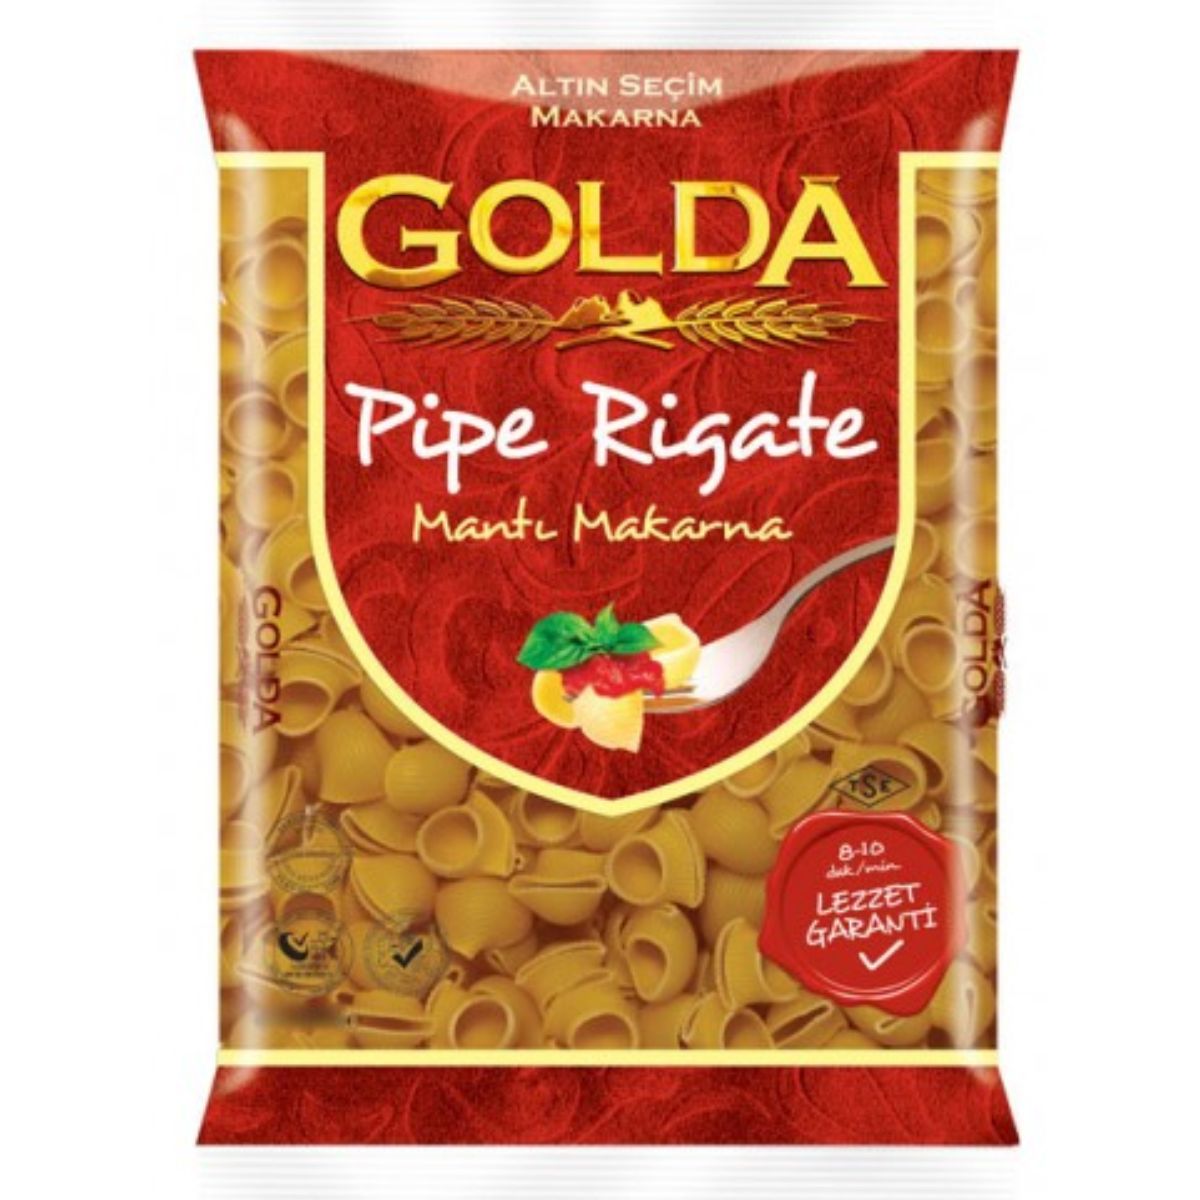 Golda - Pipe Rigate - 400g pasta.